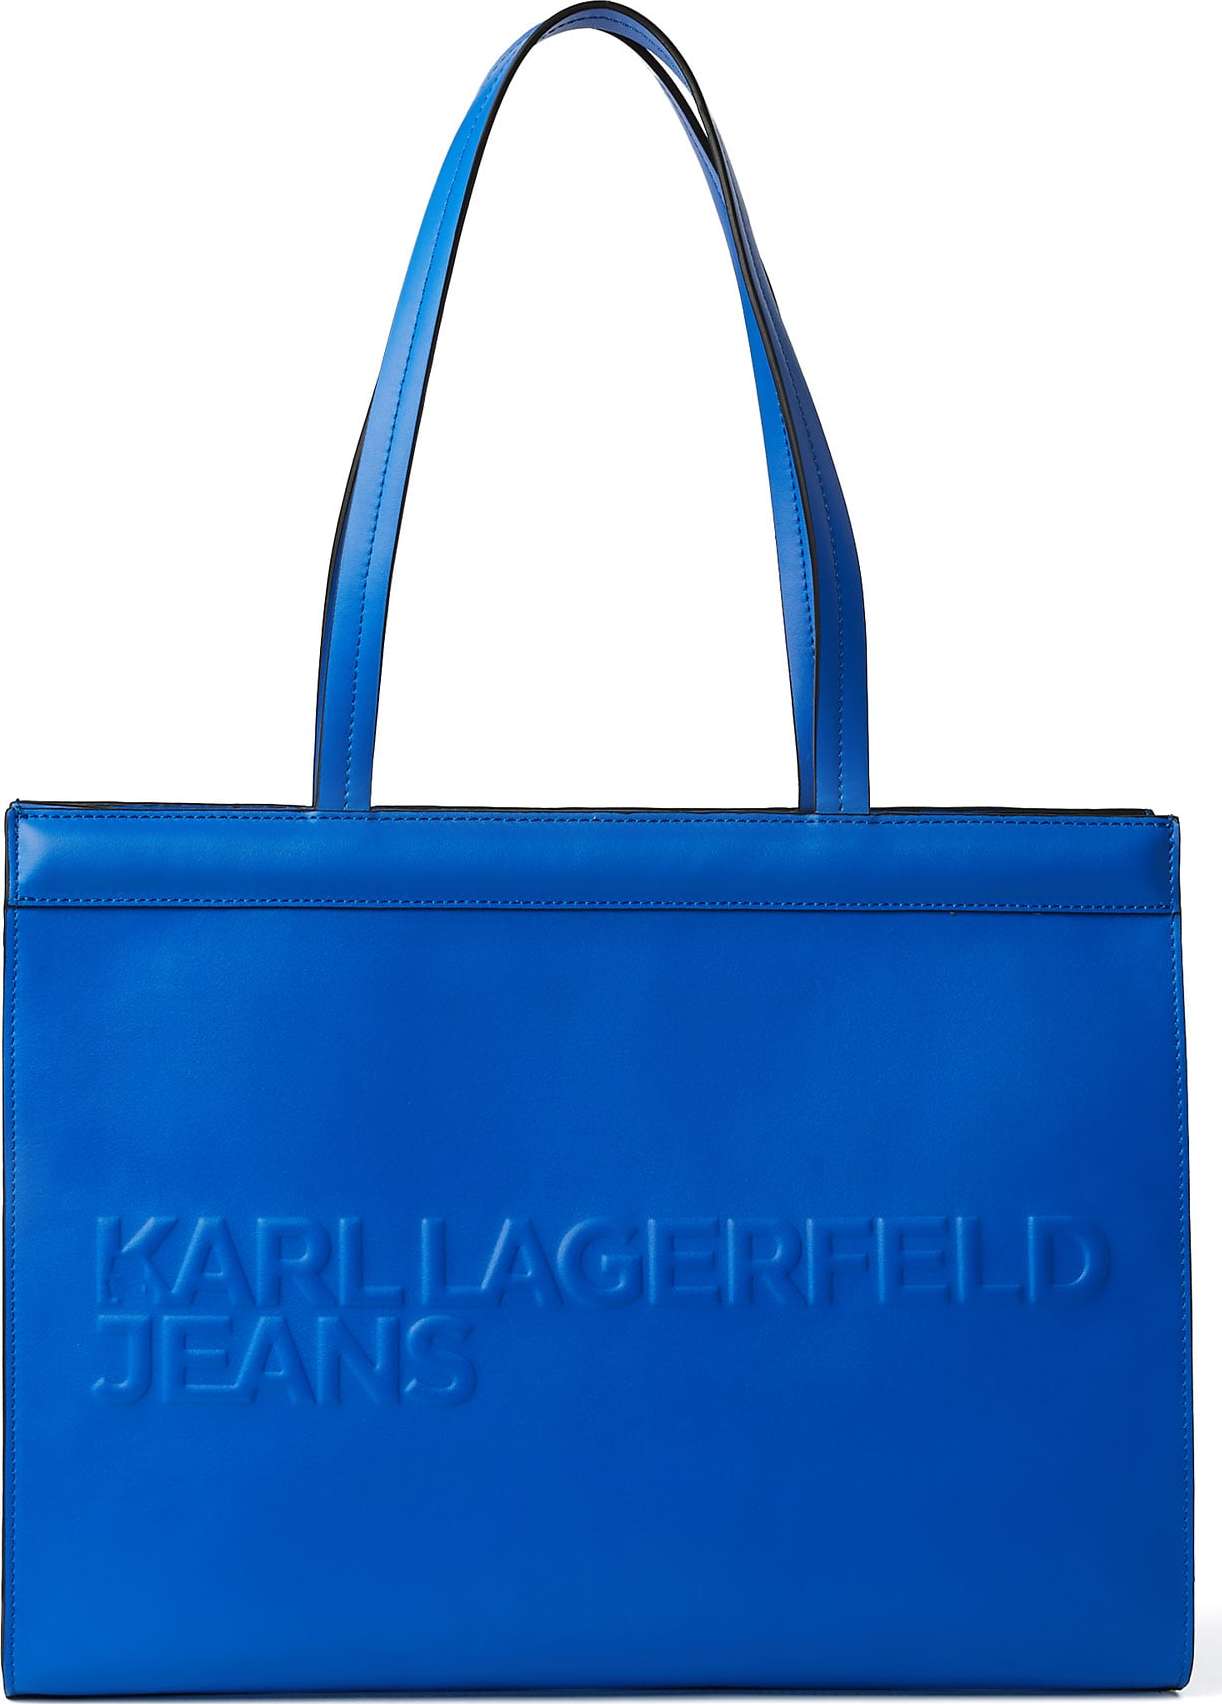 KARL LAGERFELD JEANS Nákupní taška modrá